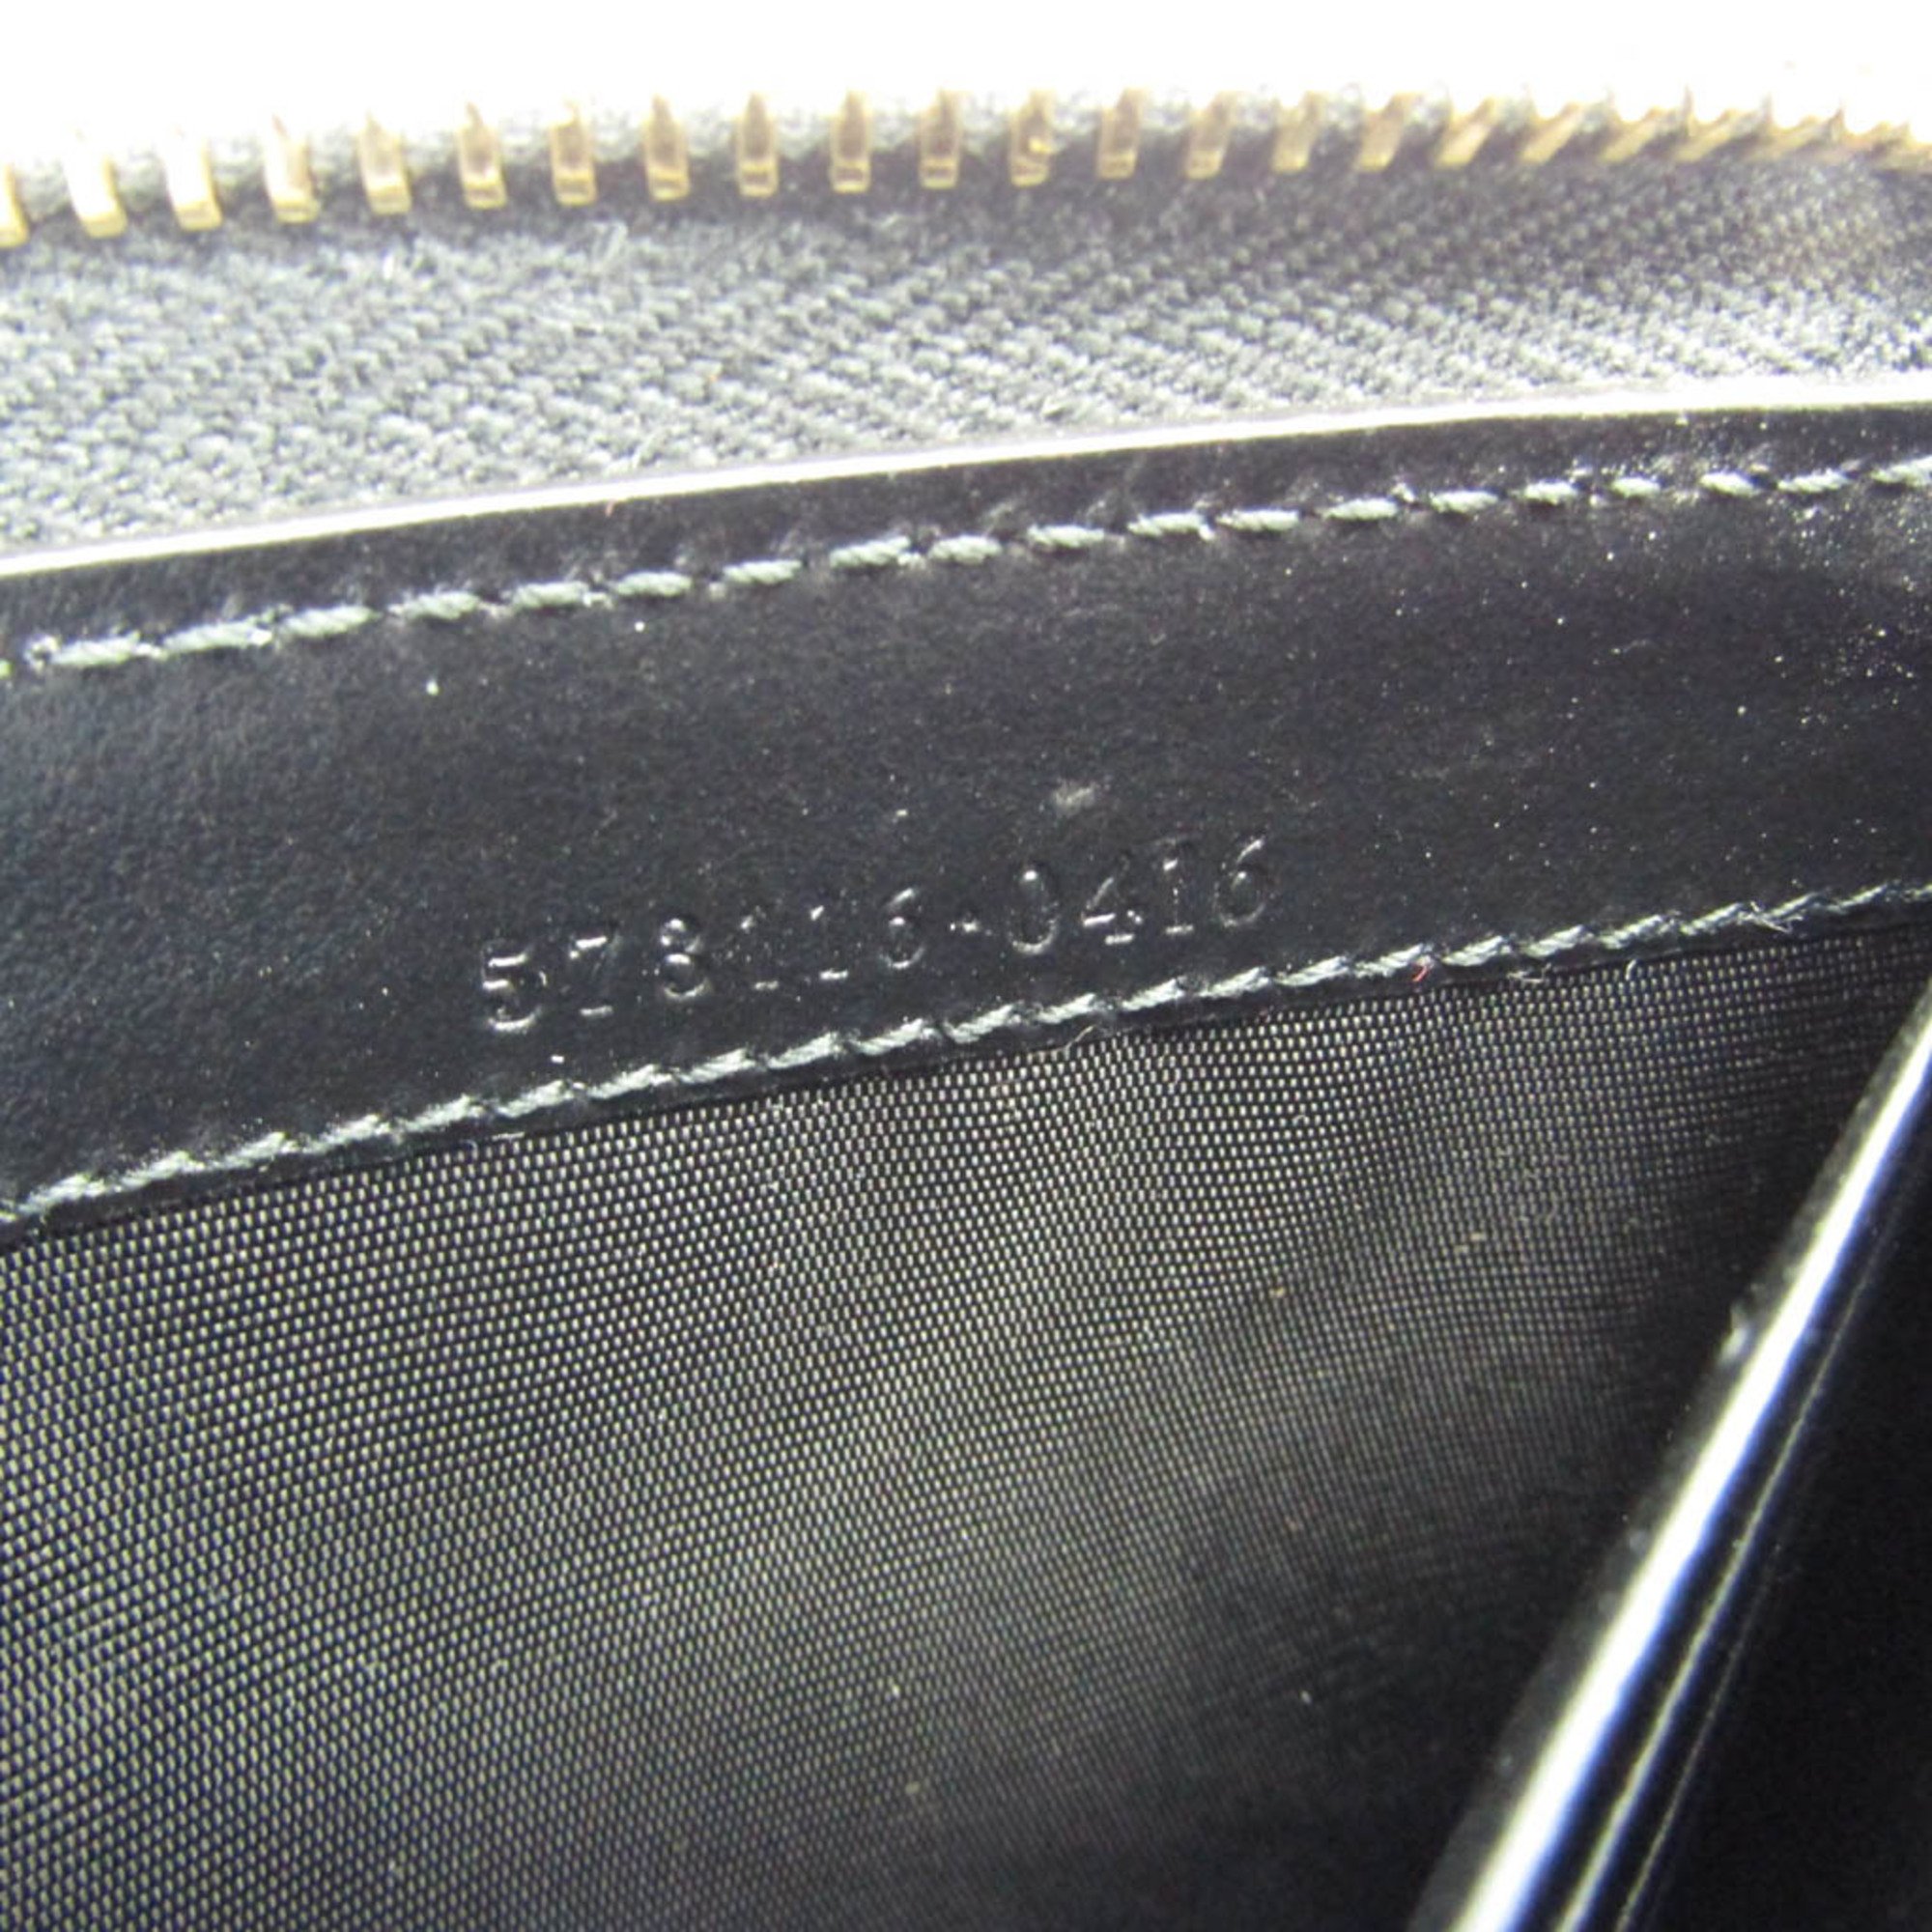 グッチ(Gucci) L字ファスナー 573116 レディース レザー 長財布（二つ折り） ブラック